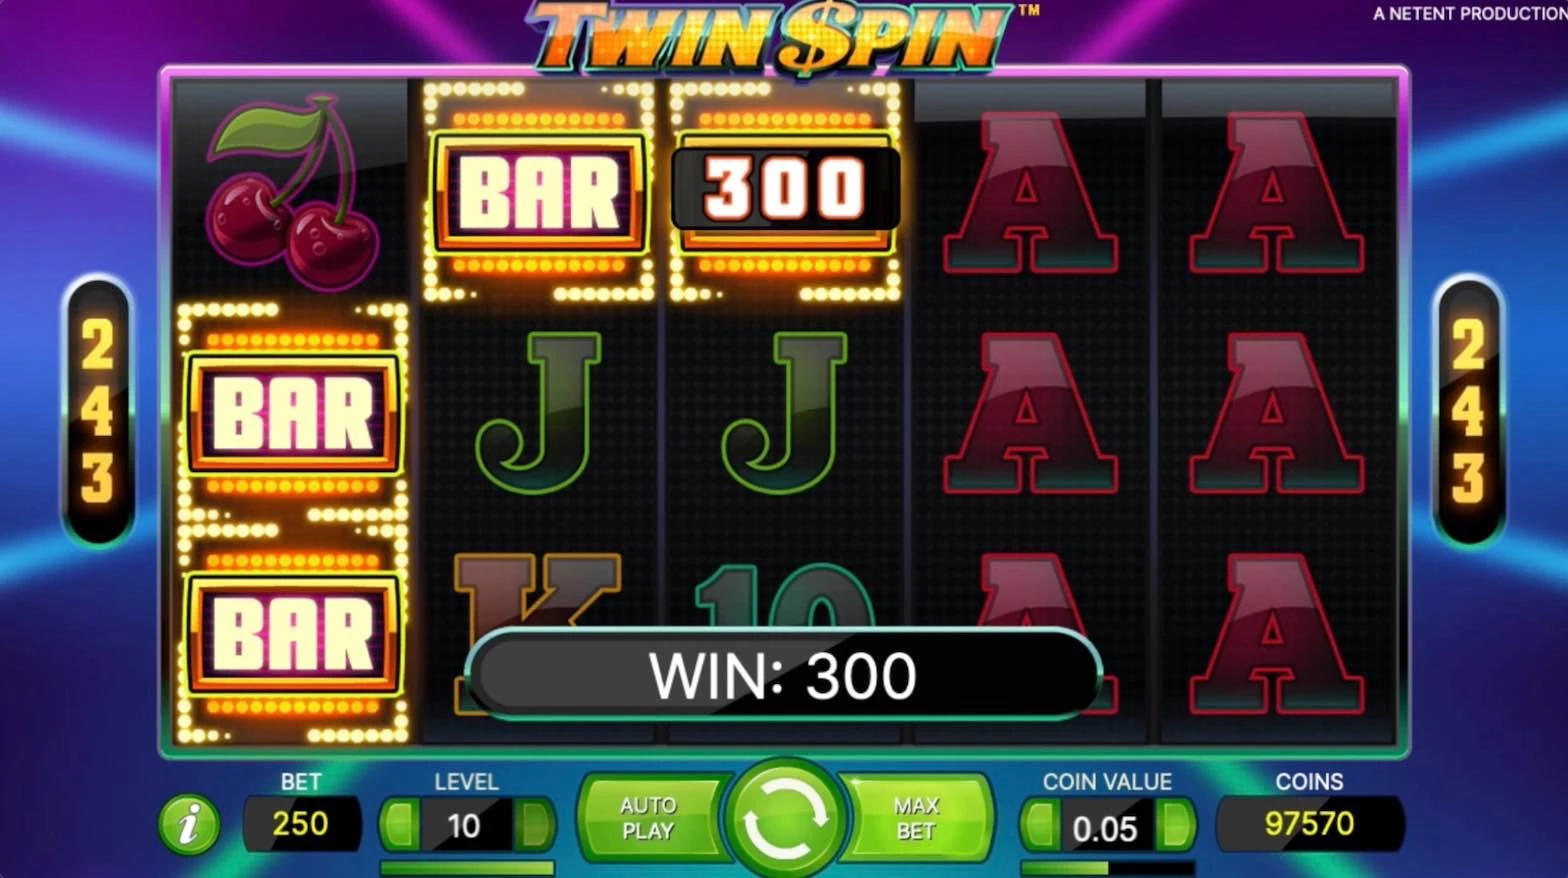 Twin Spin (NetEnt) 3 Bar Won $300